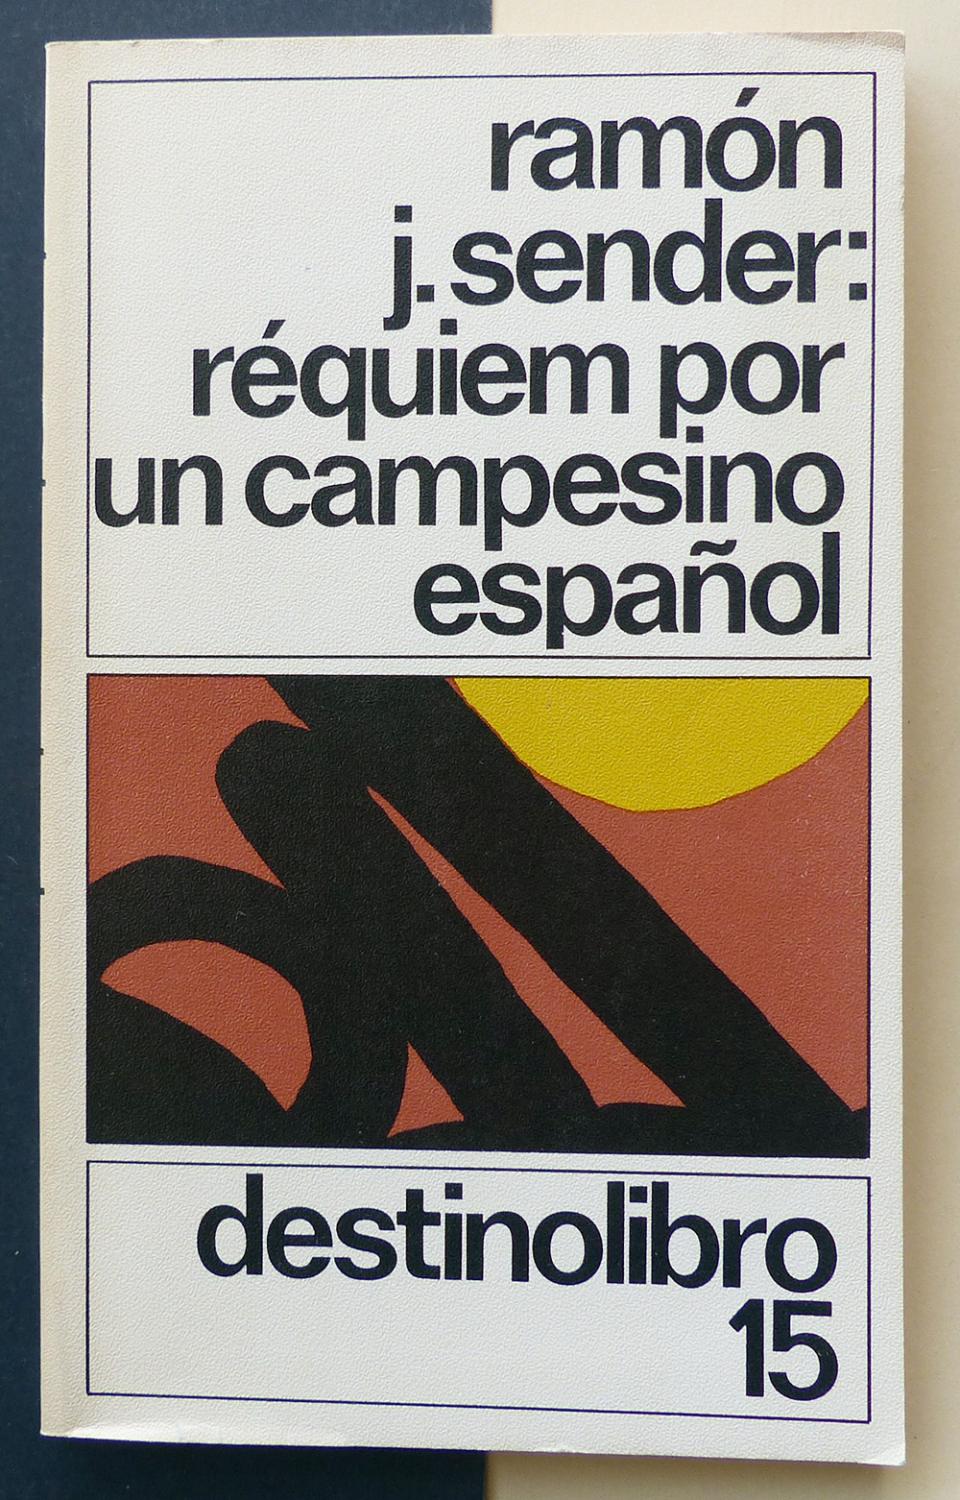 Libro Requiem Por Un Campesino Español De Ramón J Sender - Buscalibre